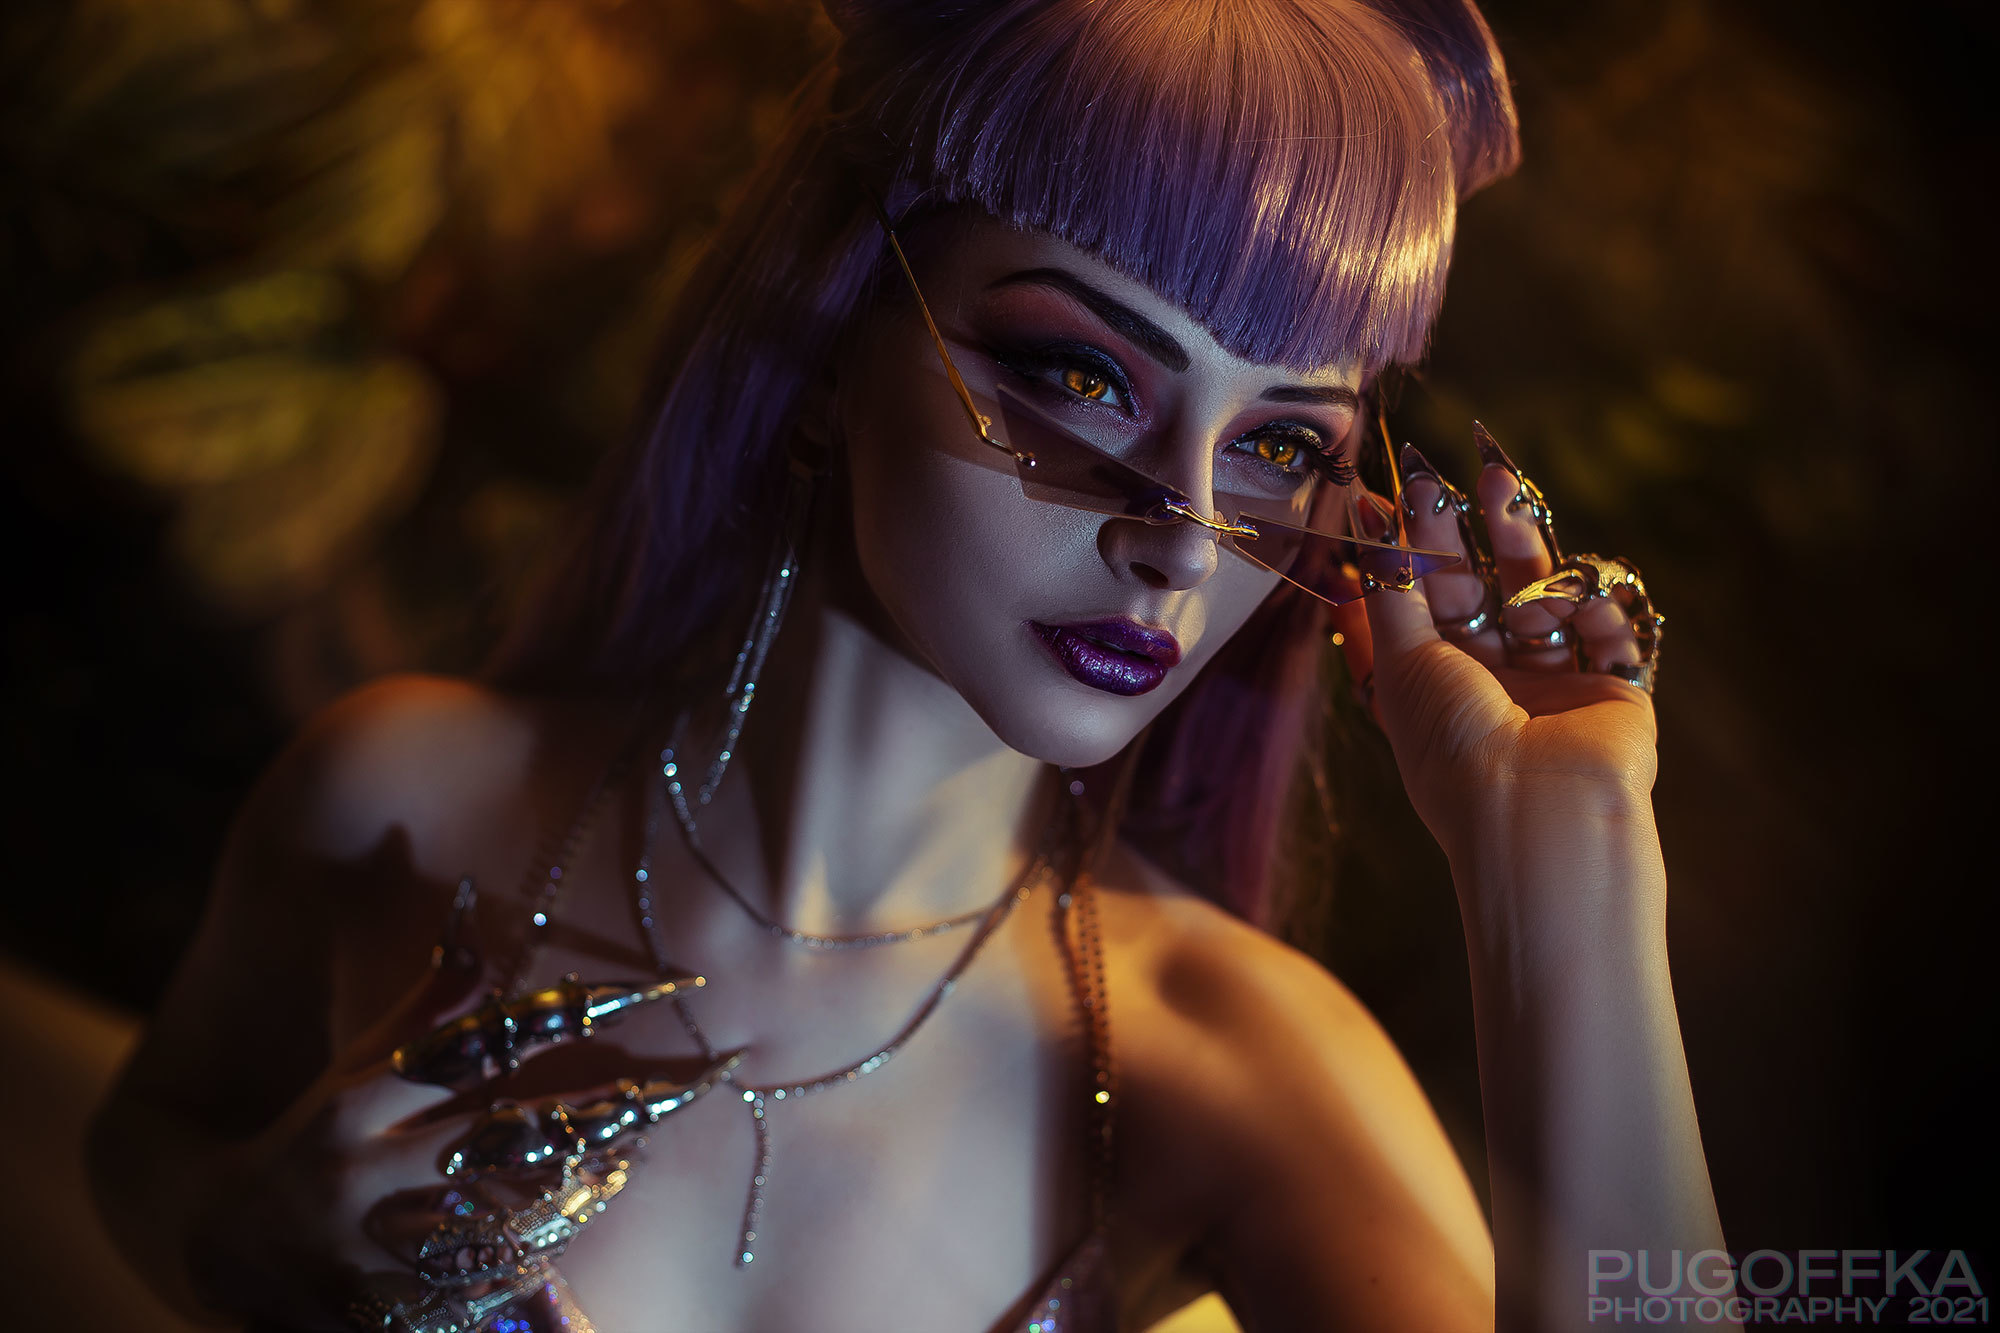 People 2000x1333 women cosplay Pugoffka K/DA makeup League of Legends purple lipstick model glowing eyes 2021 (year)